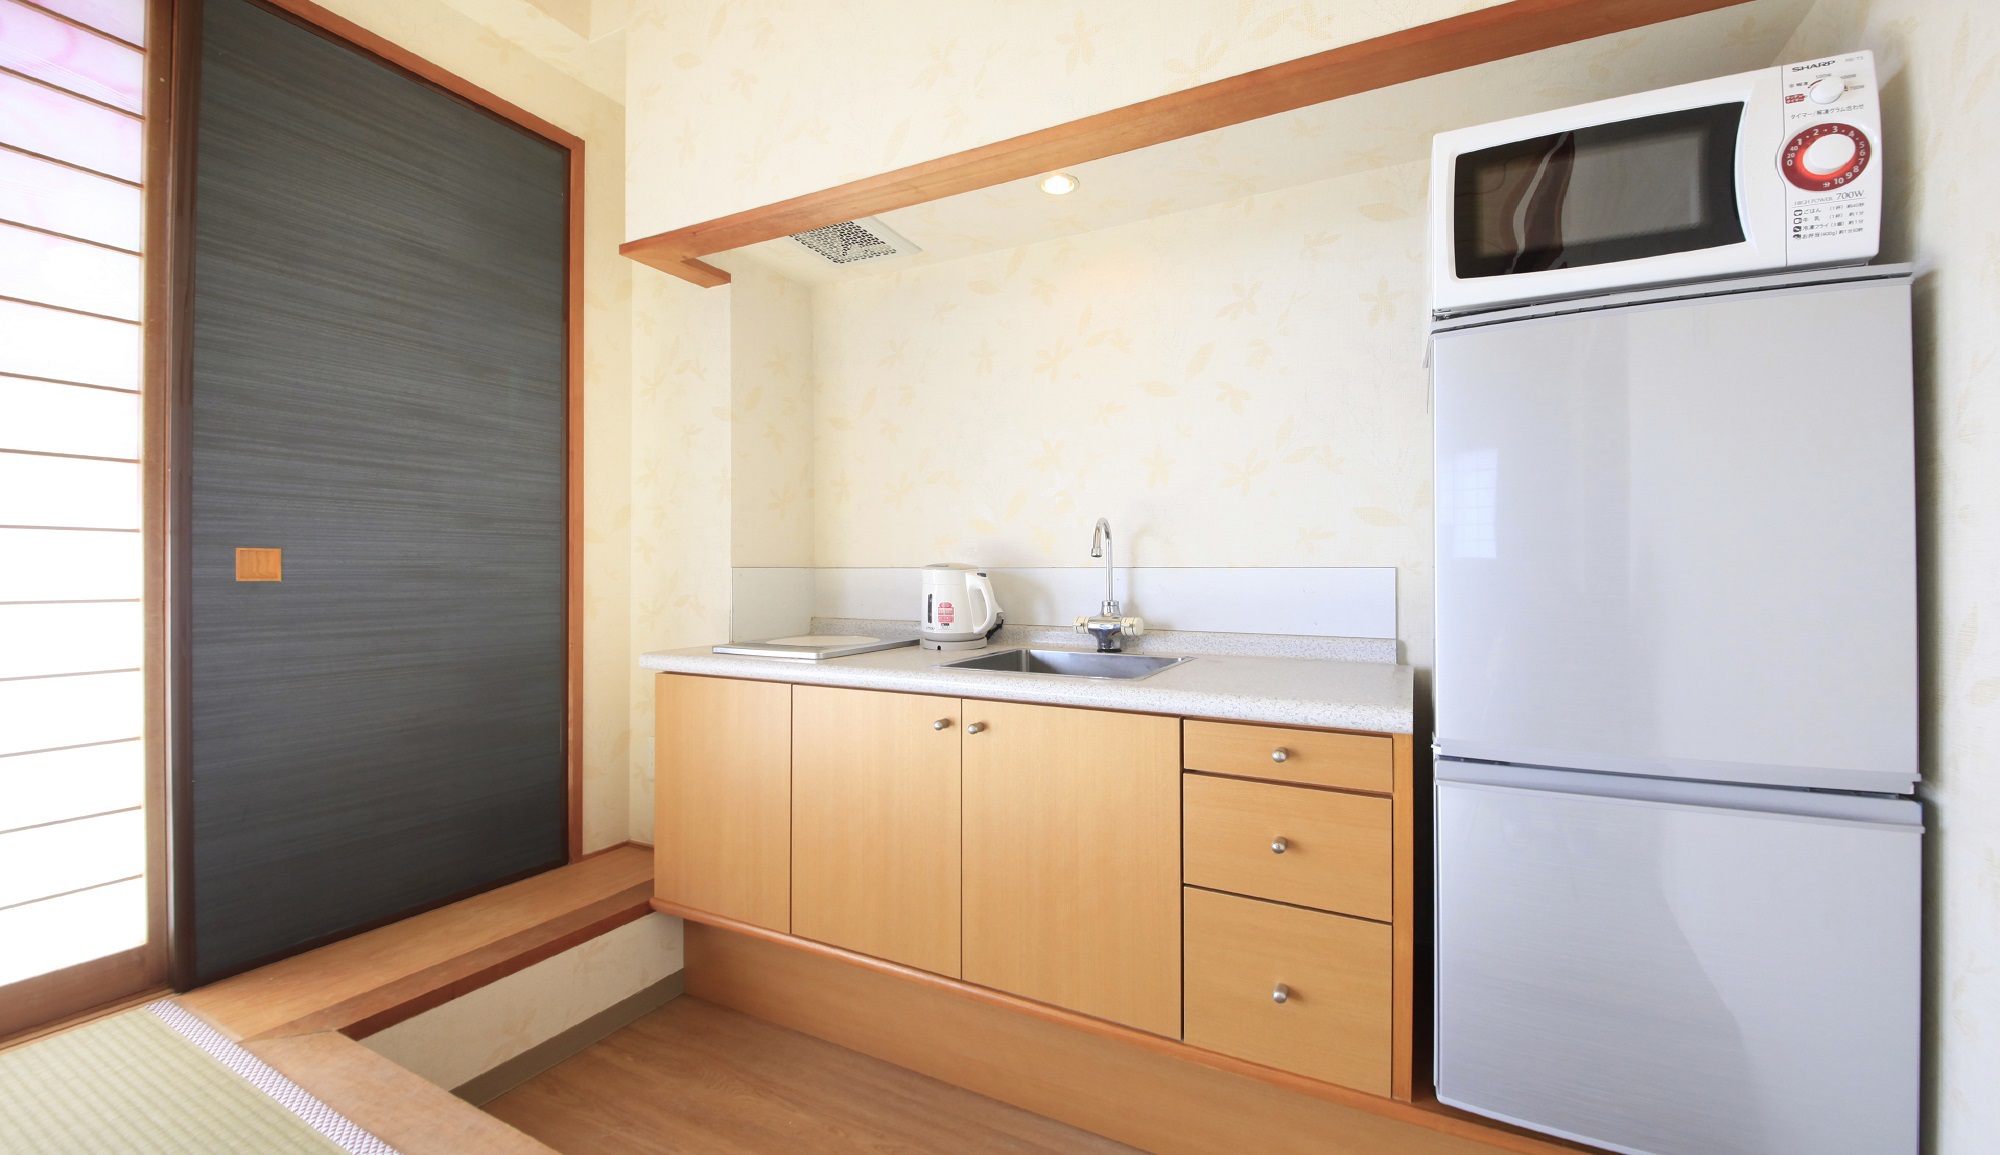 【お部屋】全室キッチン・冷蔵庫・電子レンジ完備。